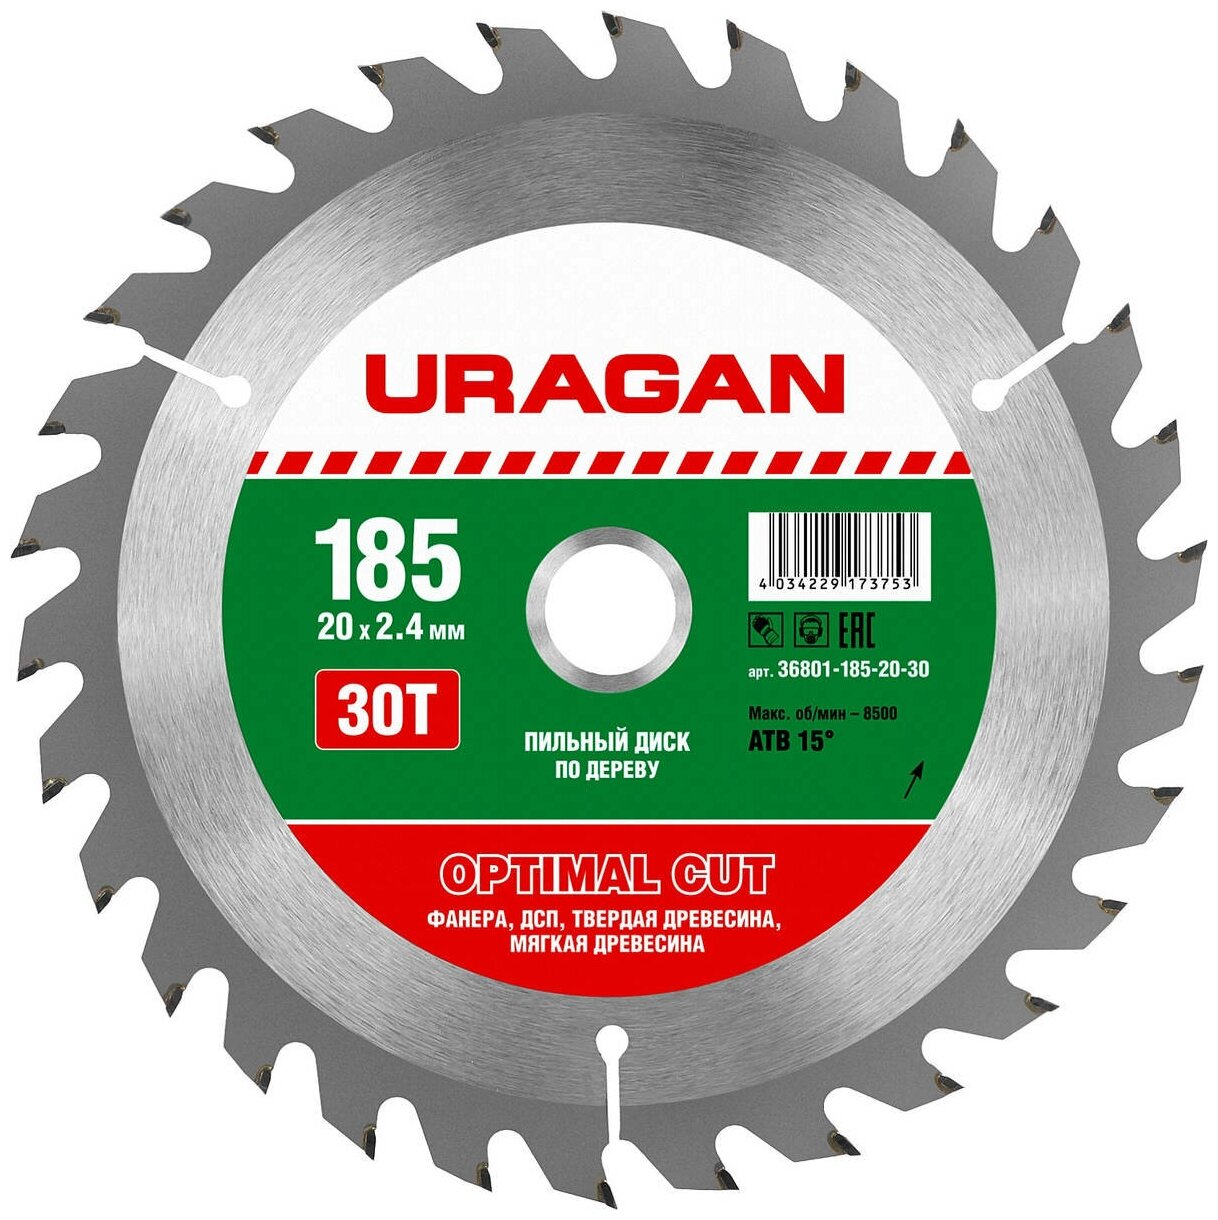 URAGAN Optimal cut 185х20мм 30Т диск пильный по дереву 36801-185-20-30